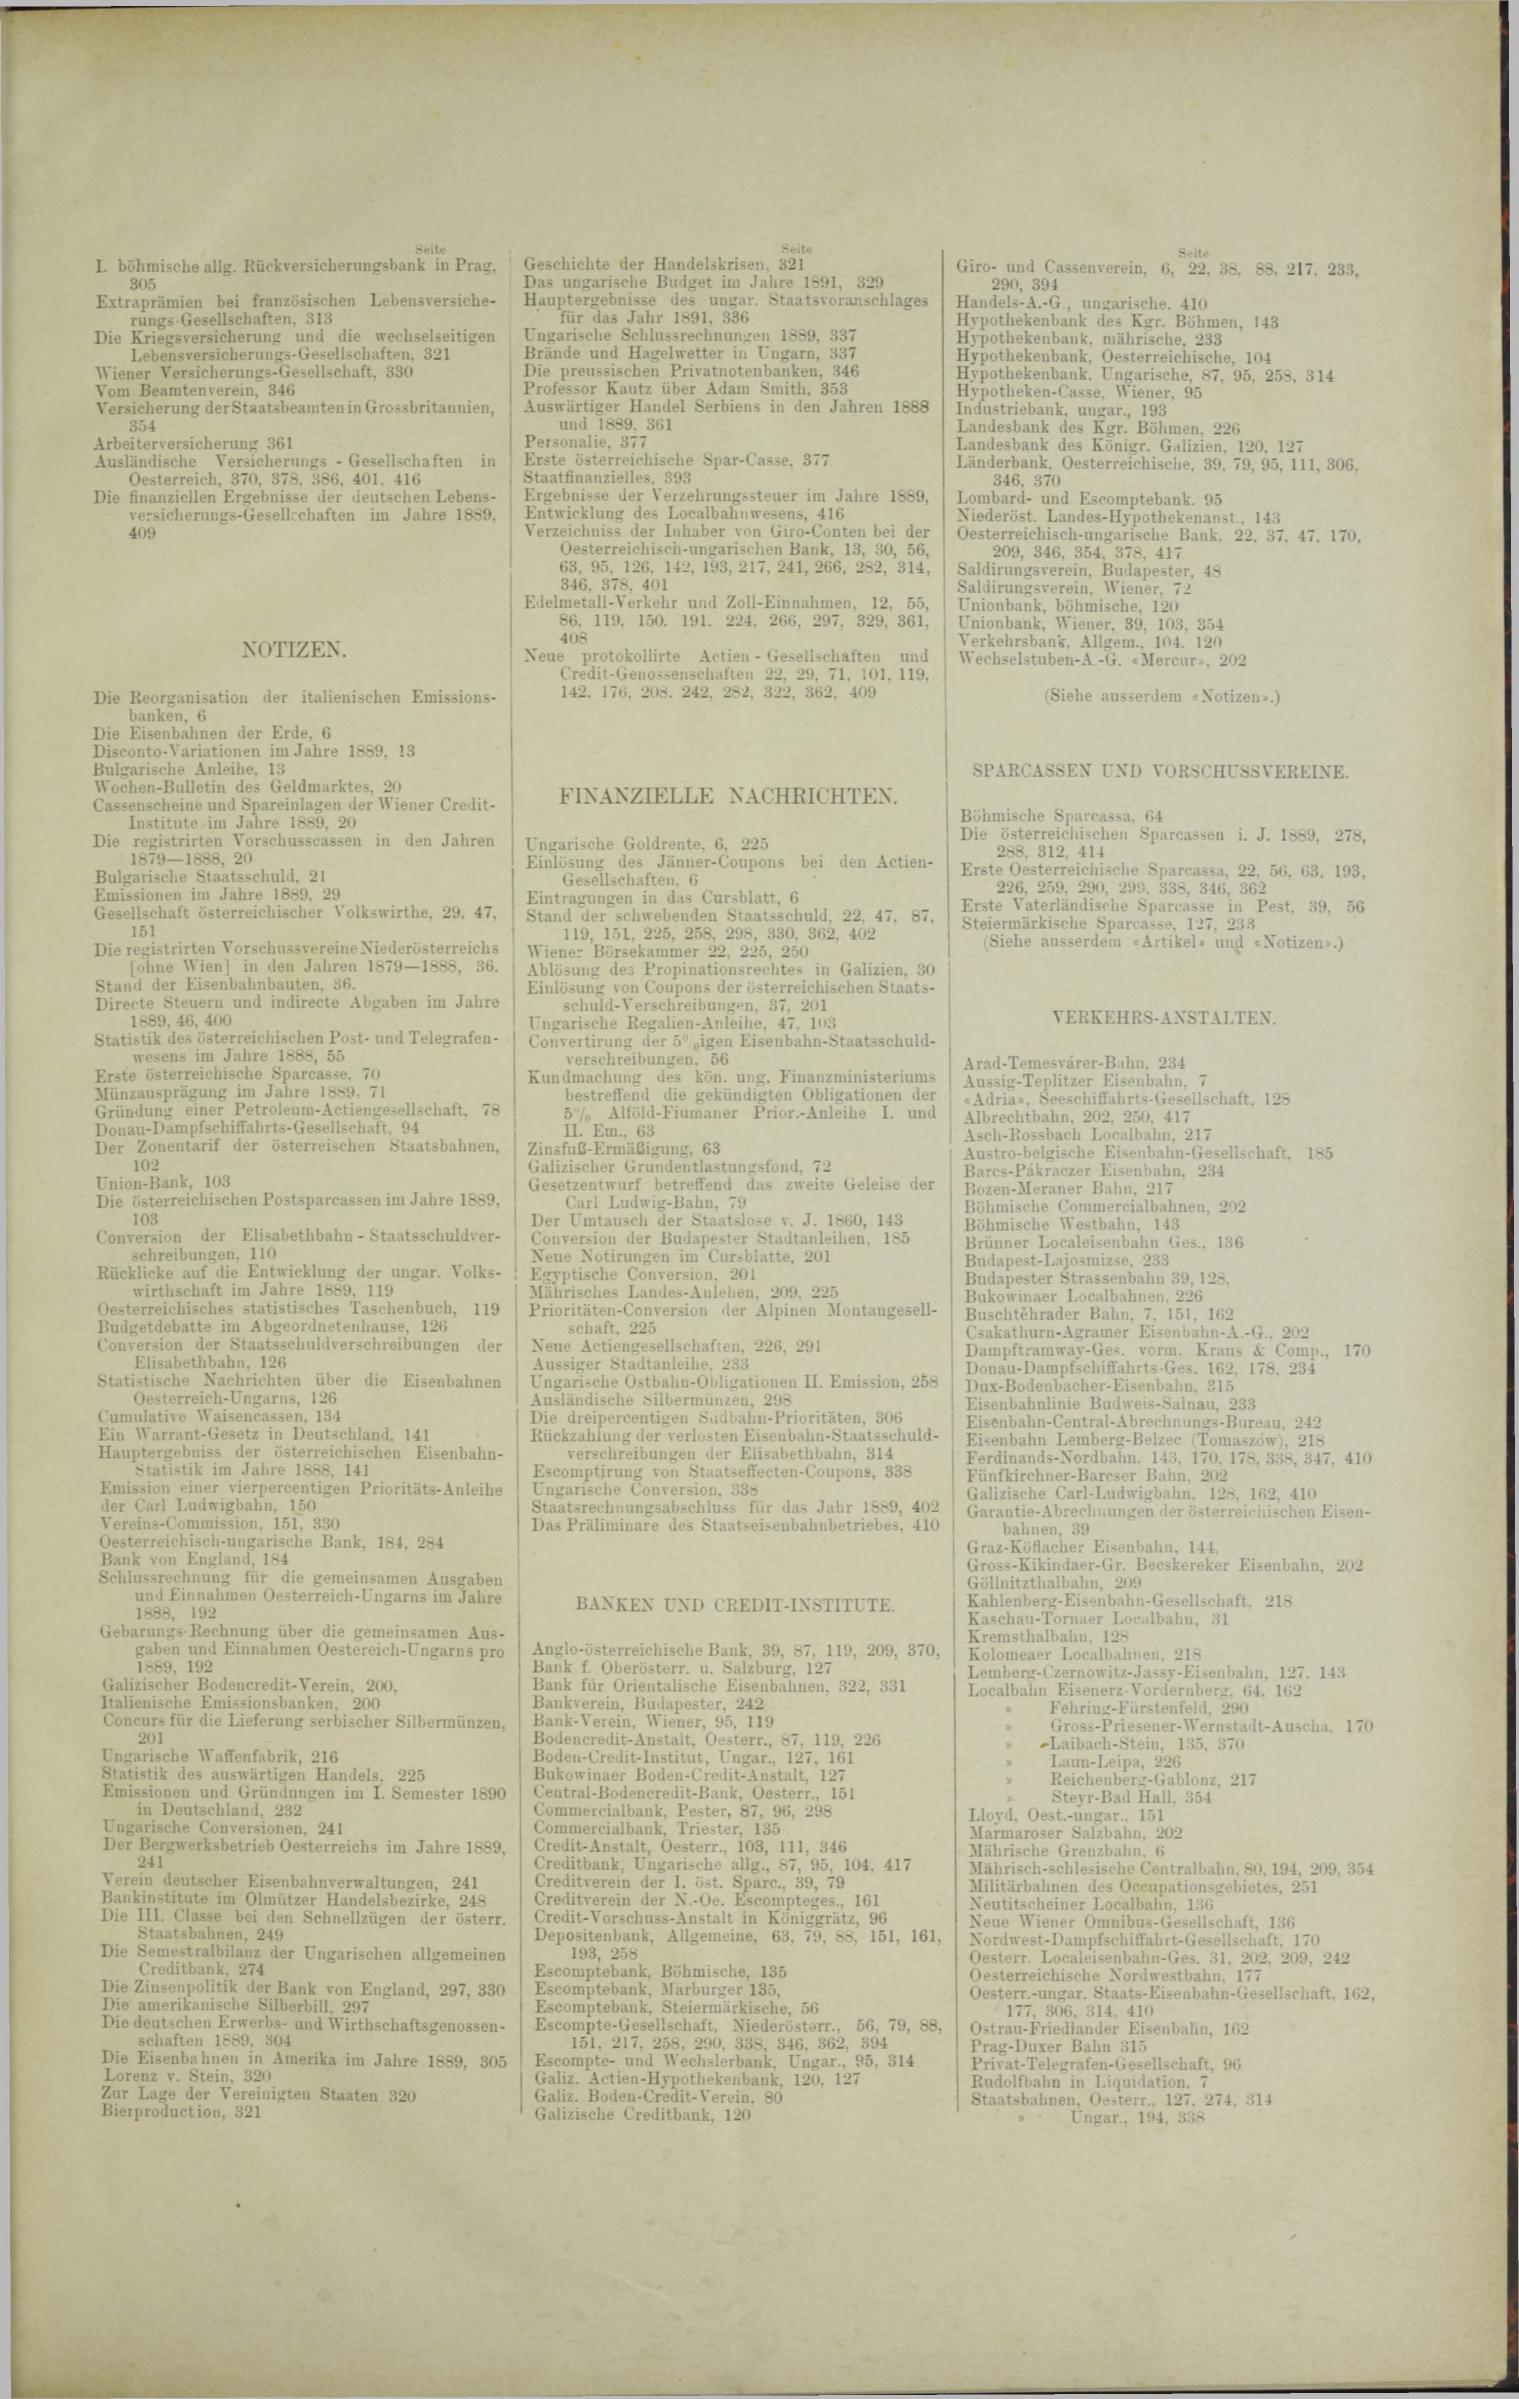 Der Tresor 04.12.1890 - Seite 11